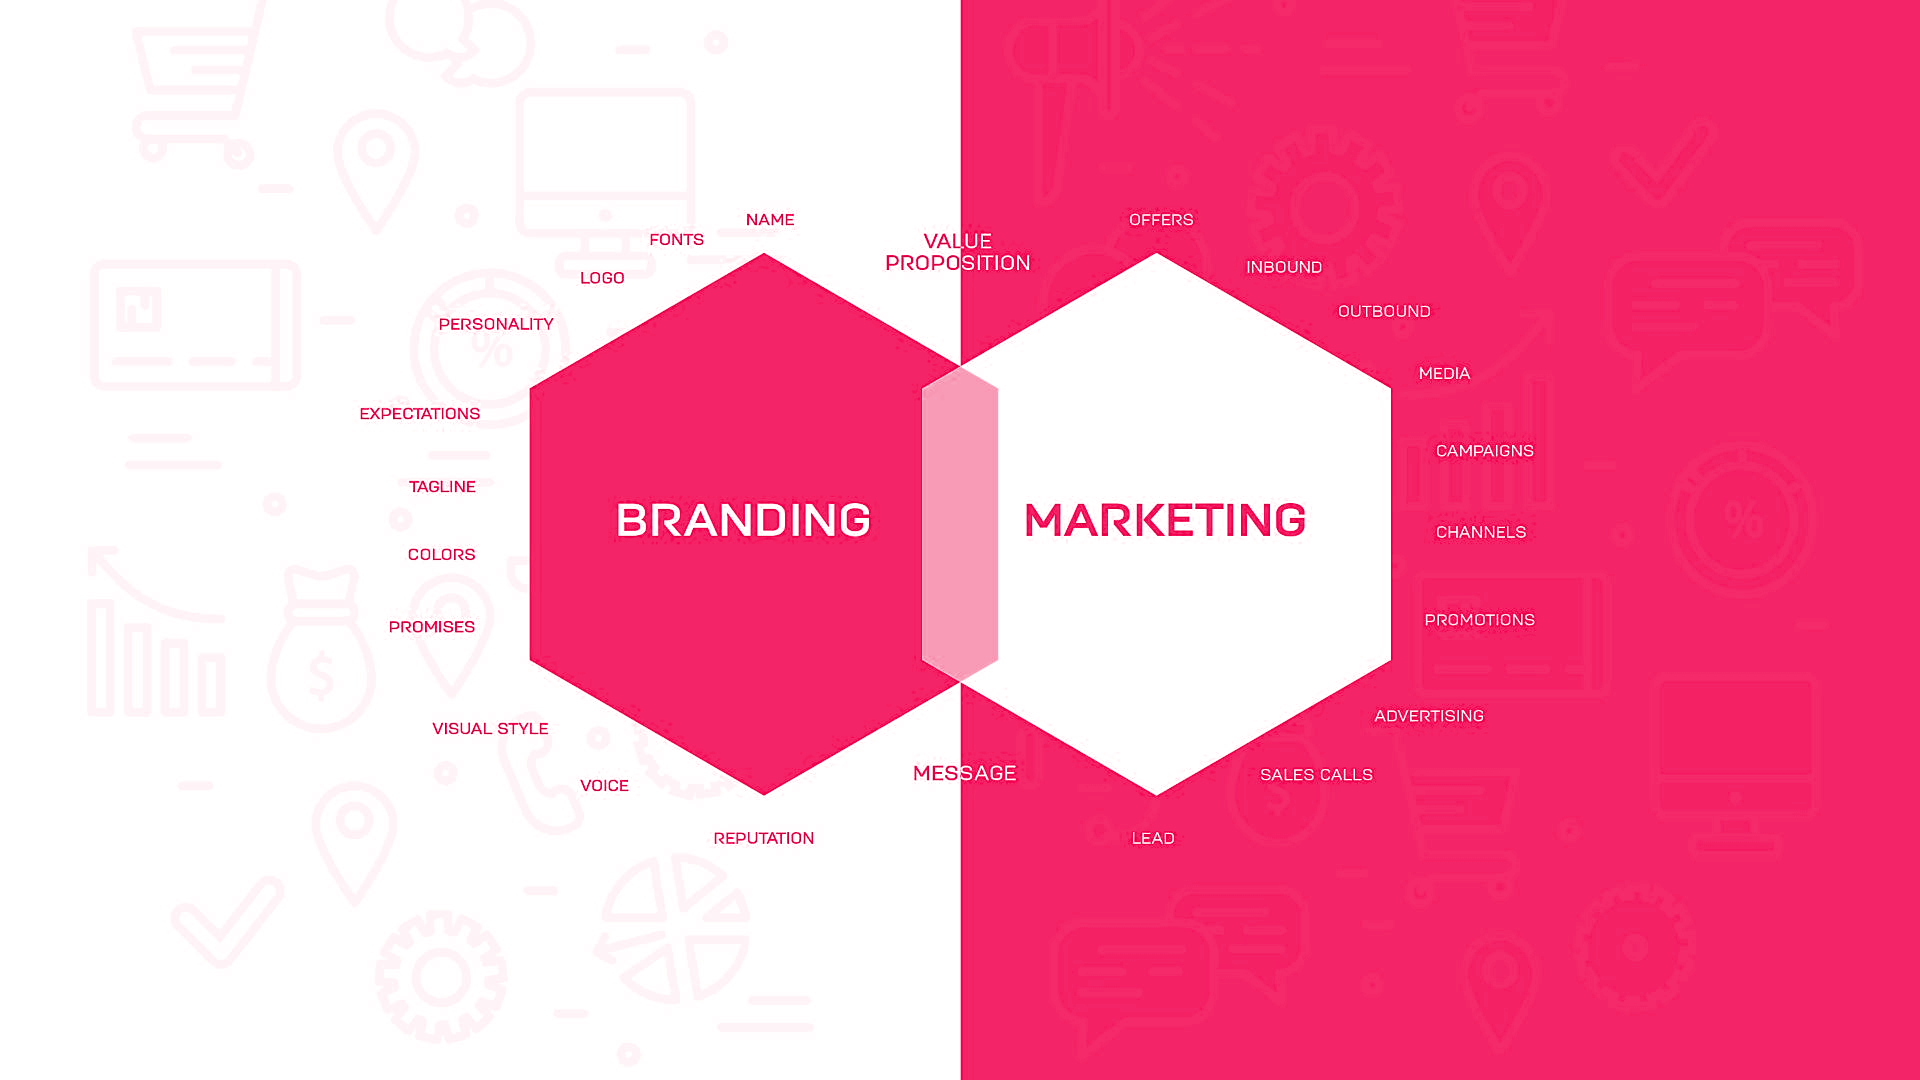 Aquí te presento una tabla comparativa de los touch points y hard points del branding versus el marketing: